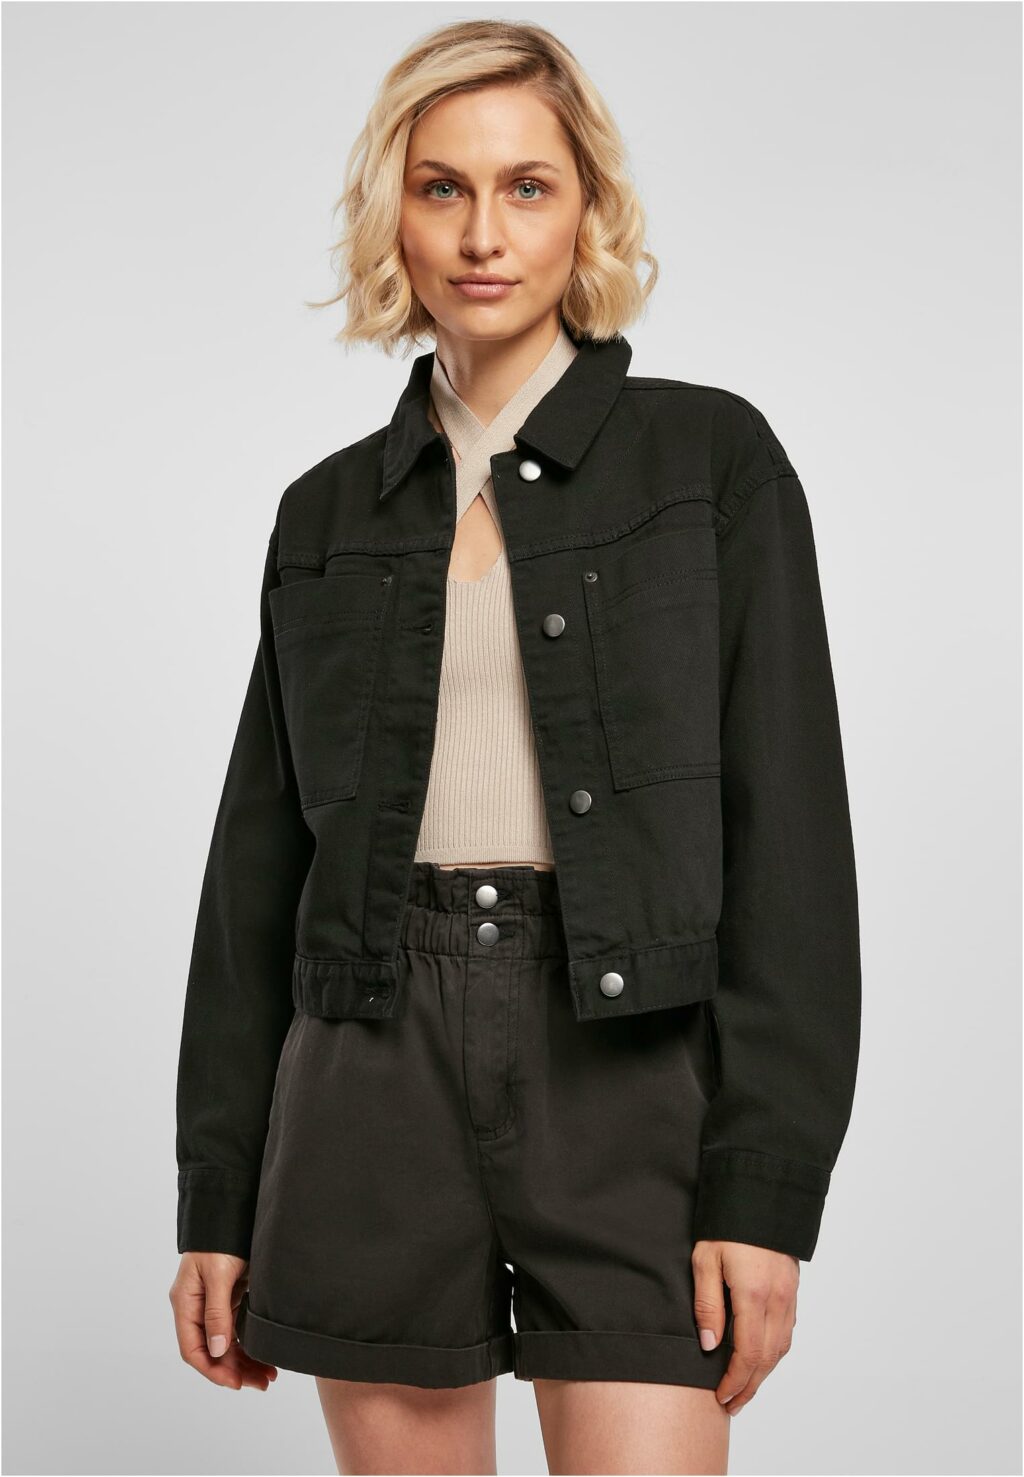 Urban Classics Ladies Short Boxy Worker Jacket black TB4781